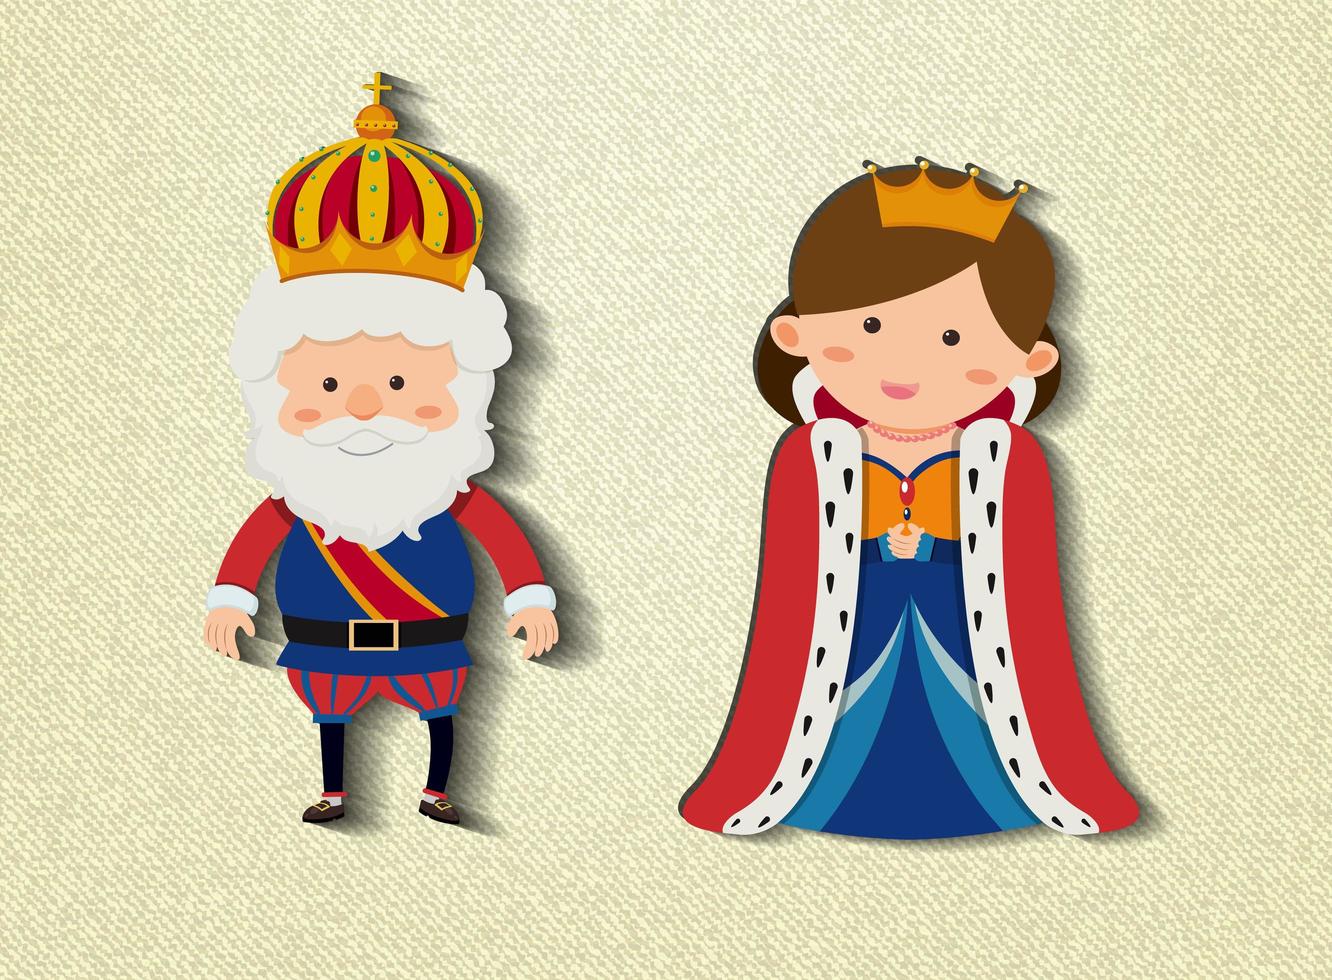 King and queen cartoon character vector